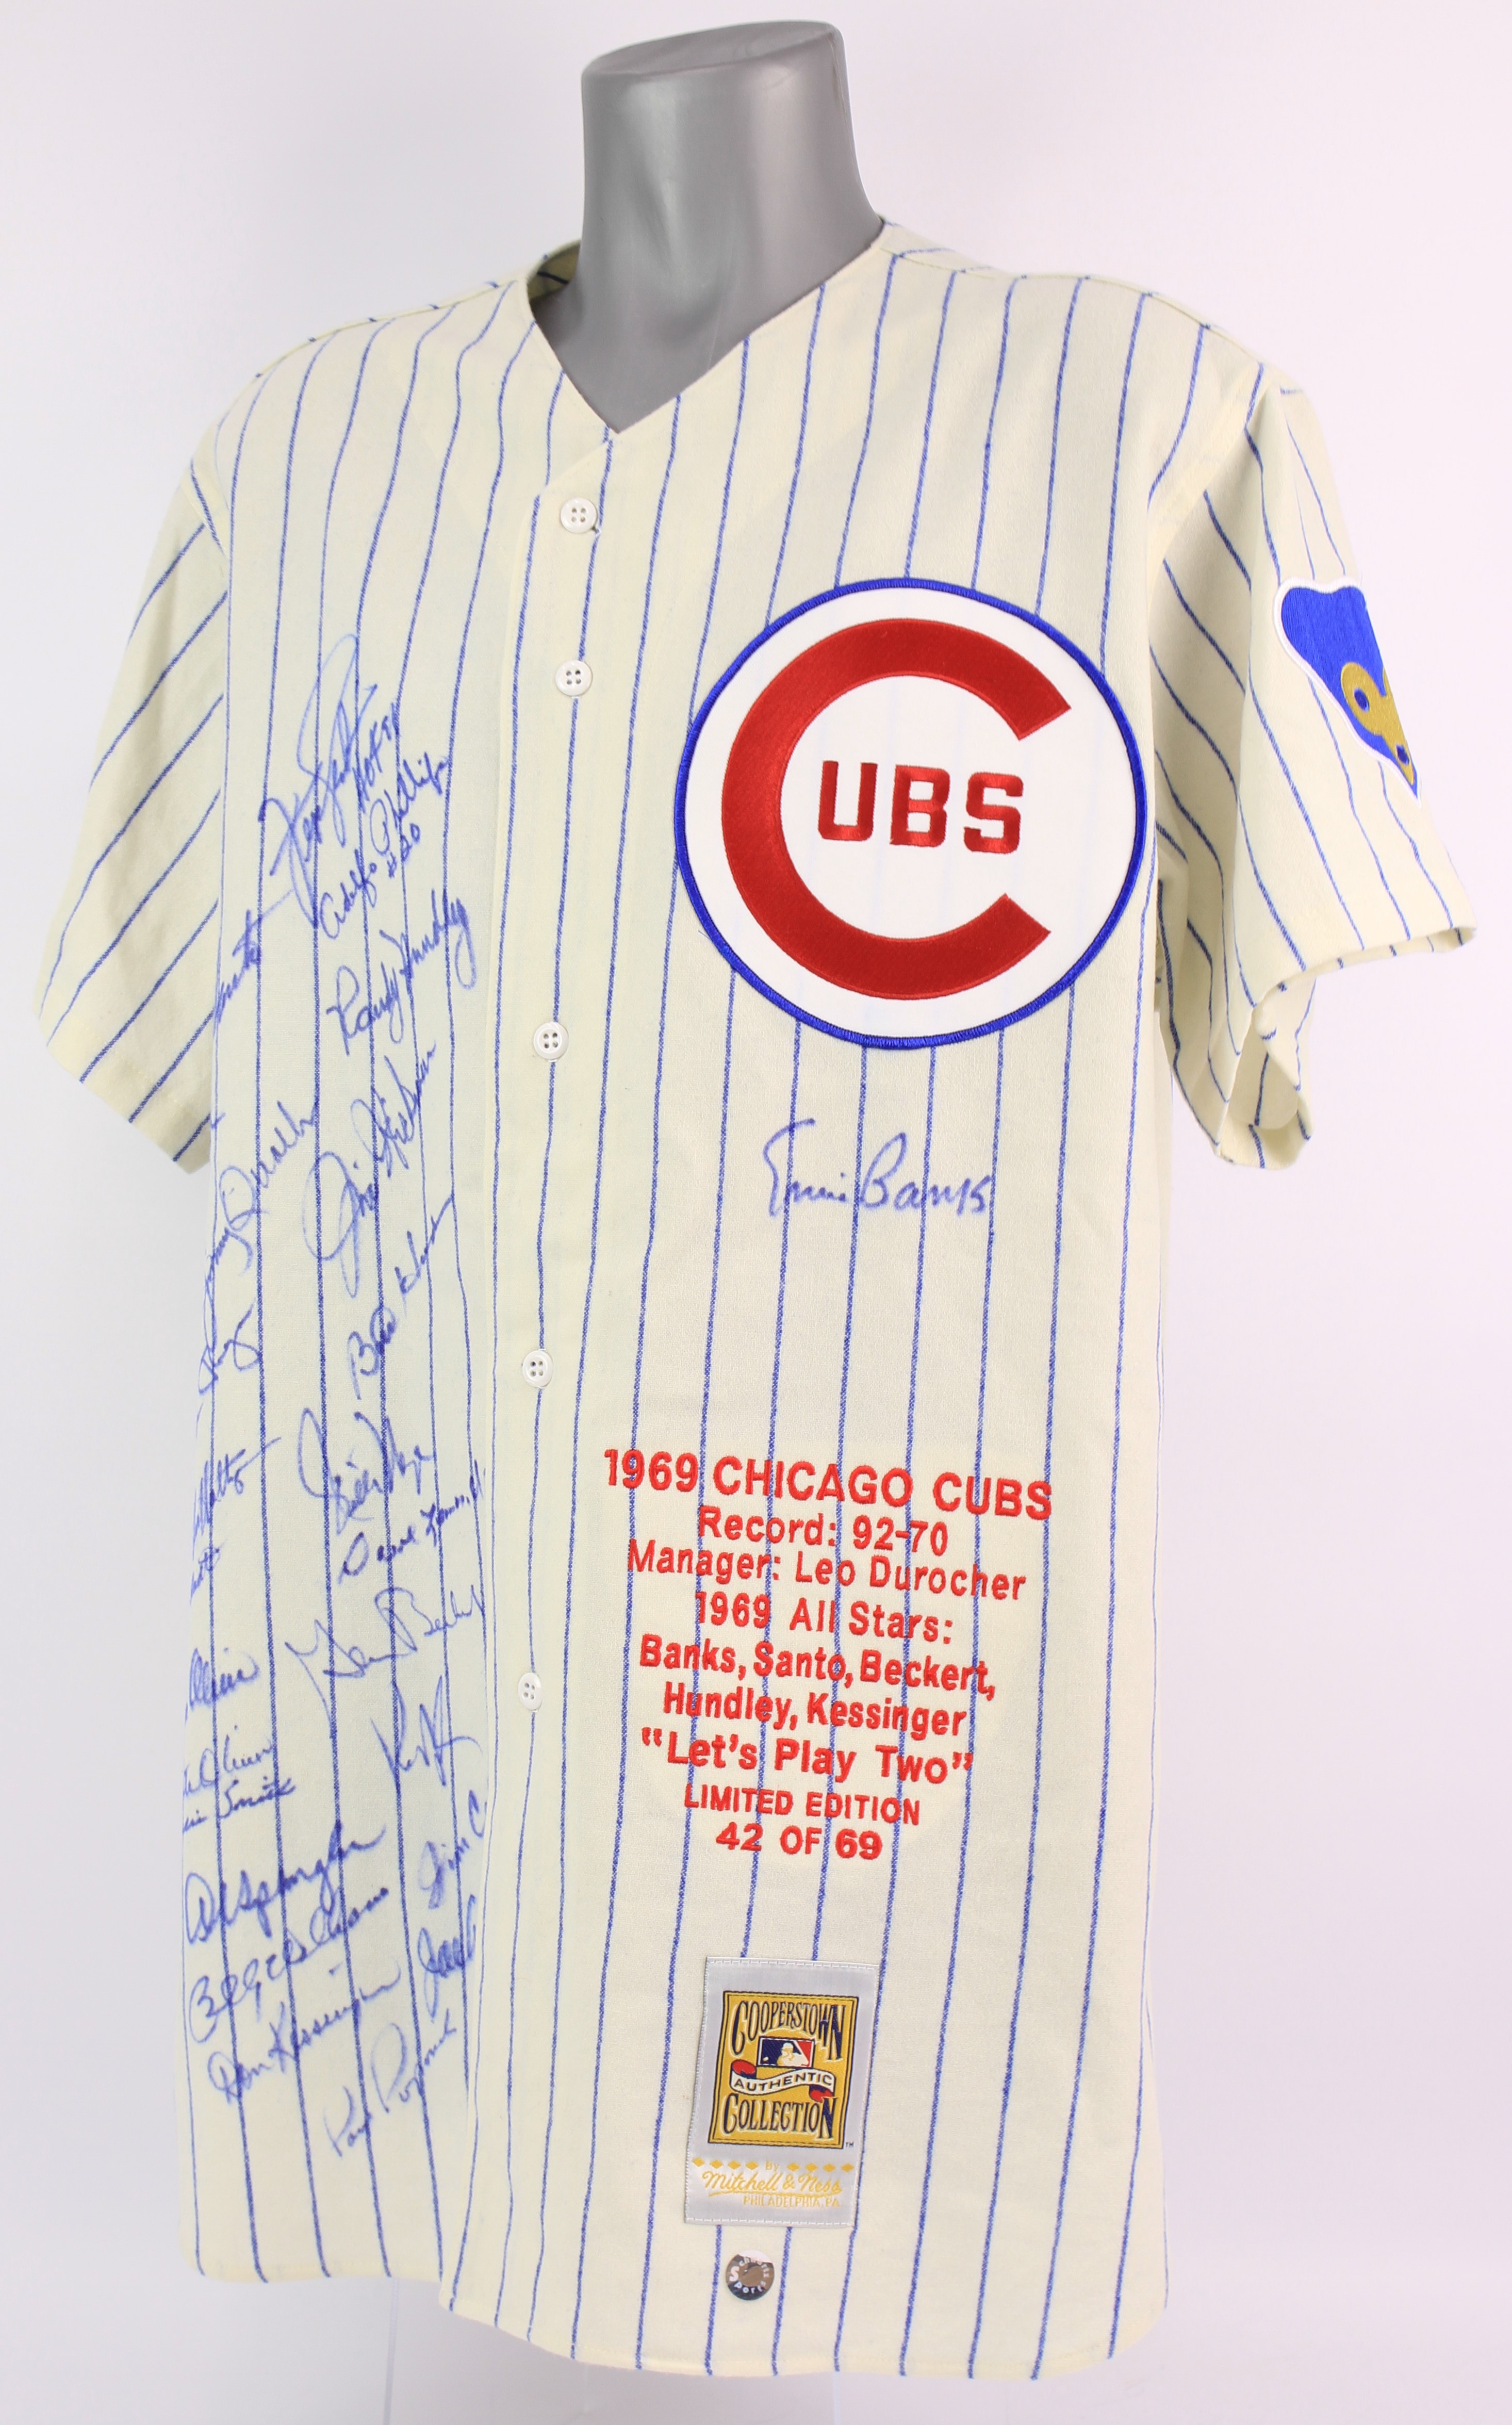 Ernie Banks Chicago Cubs Autographed Custom Stat Jersey - JSA